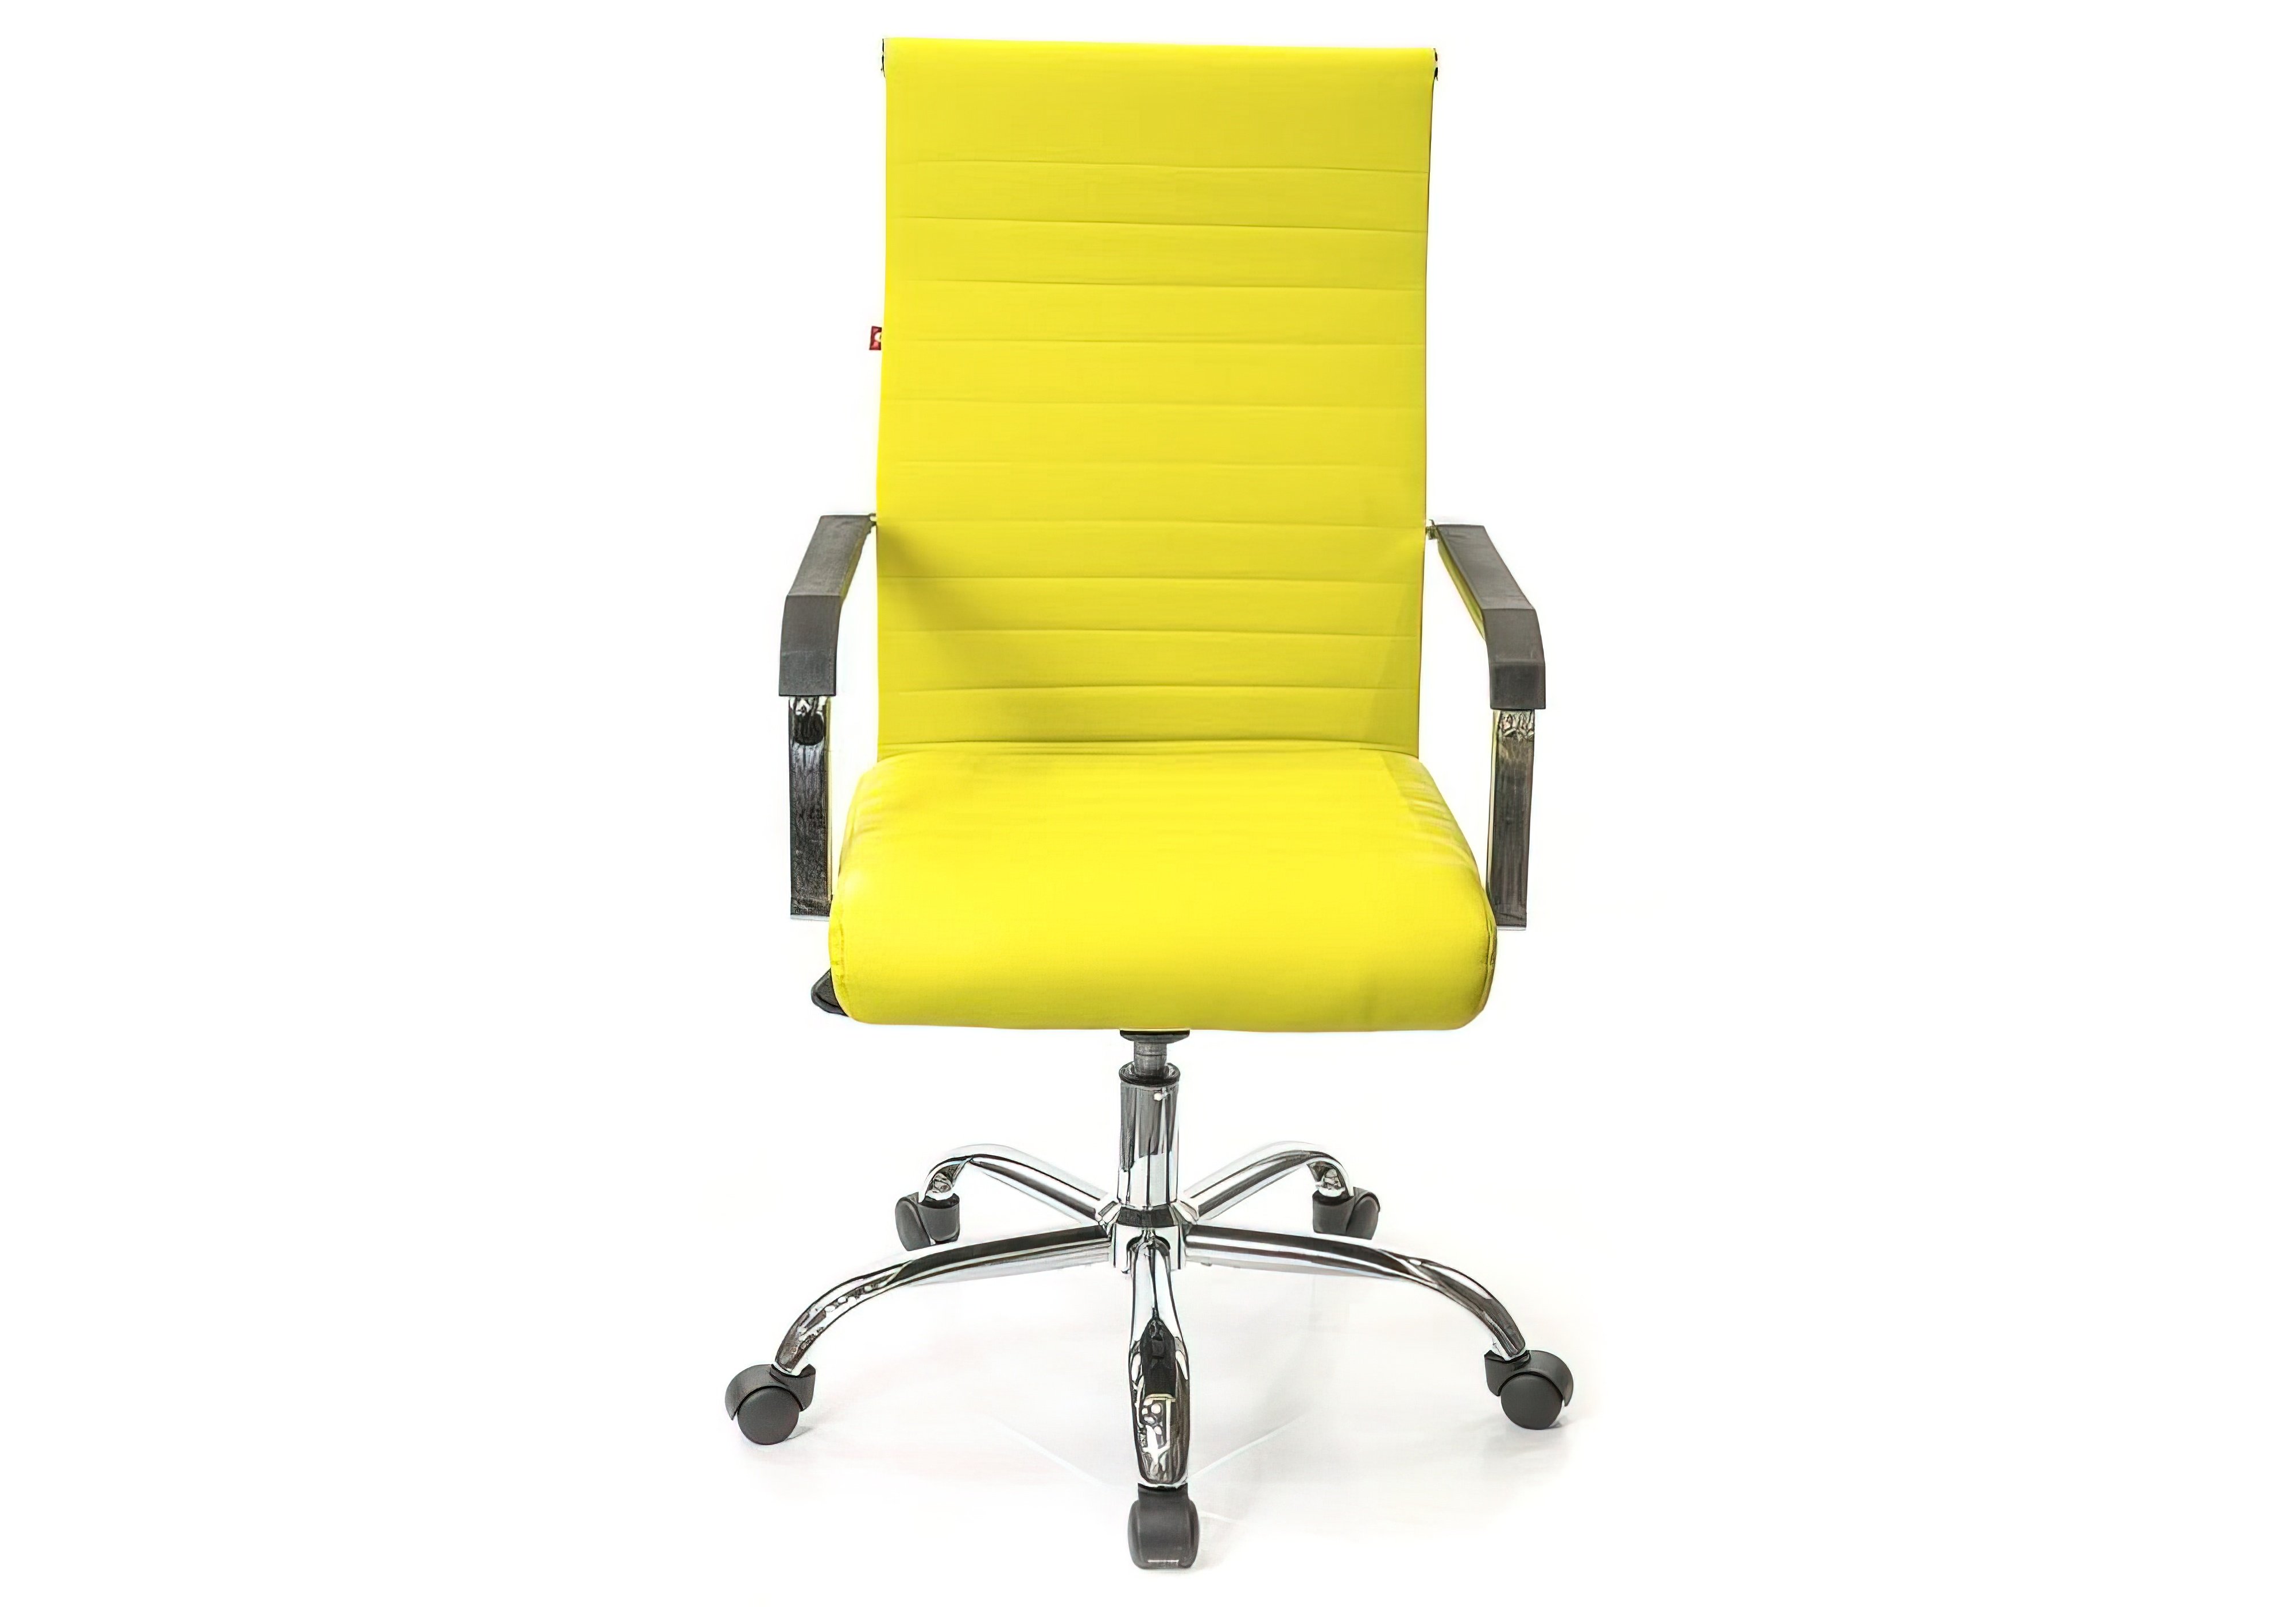  Купить Офисные кресла Кресло "Кап FX 09698" Verona